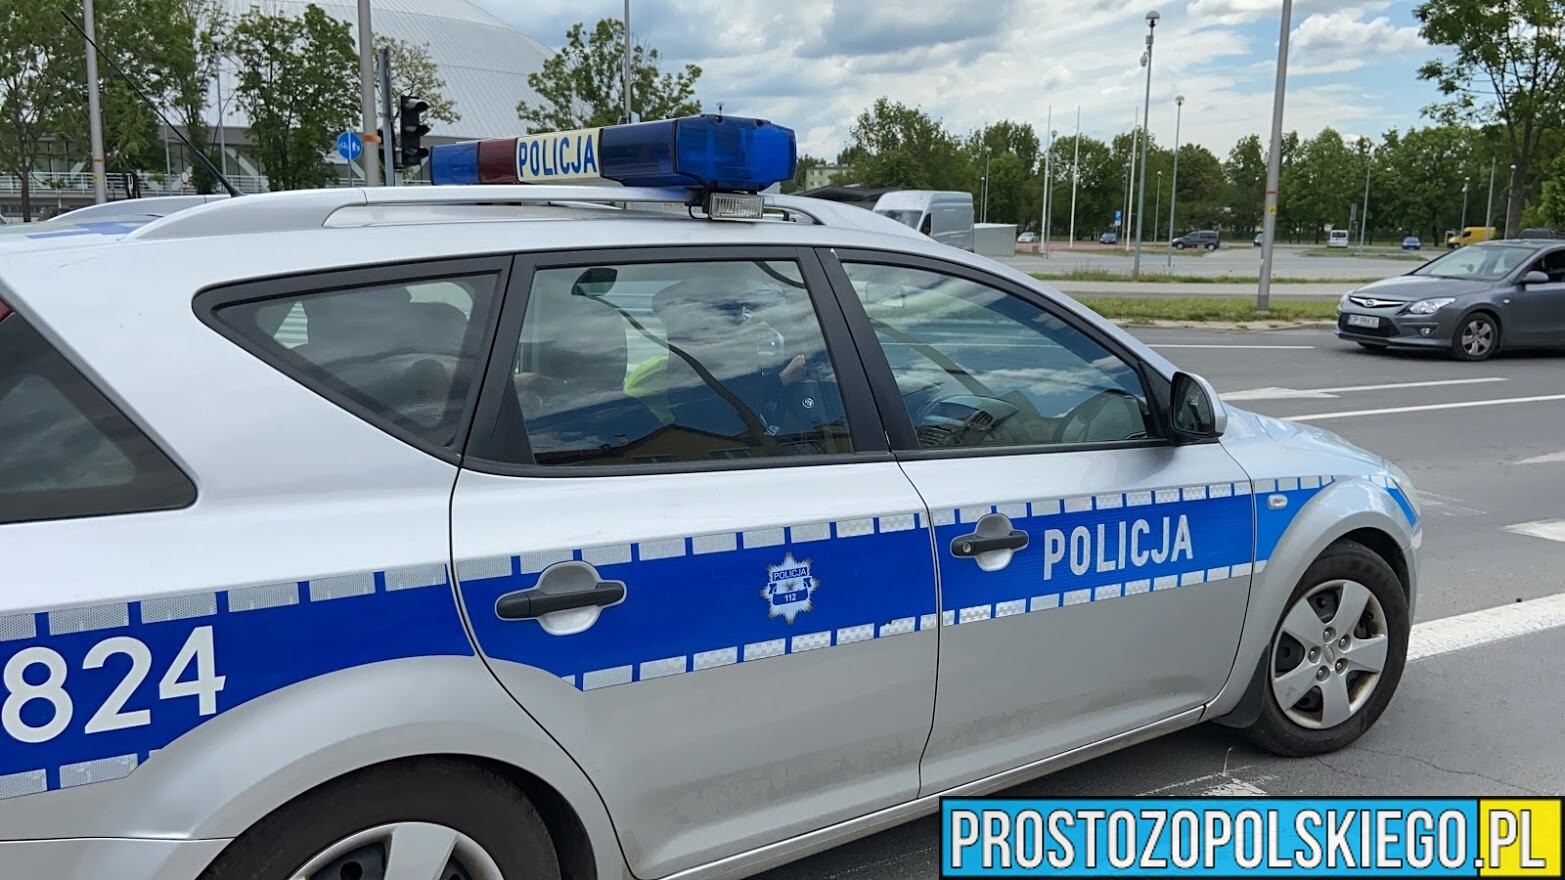 21-latek ukradł samochód w Brzegu. Został zatrzymany grozi mu kara do 10 lat więzienia.